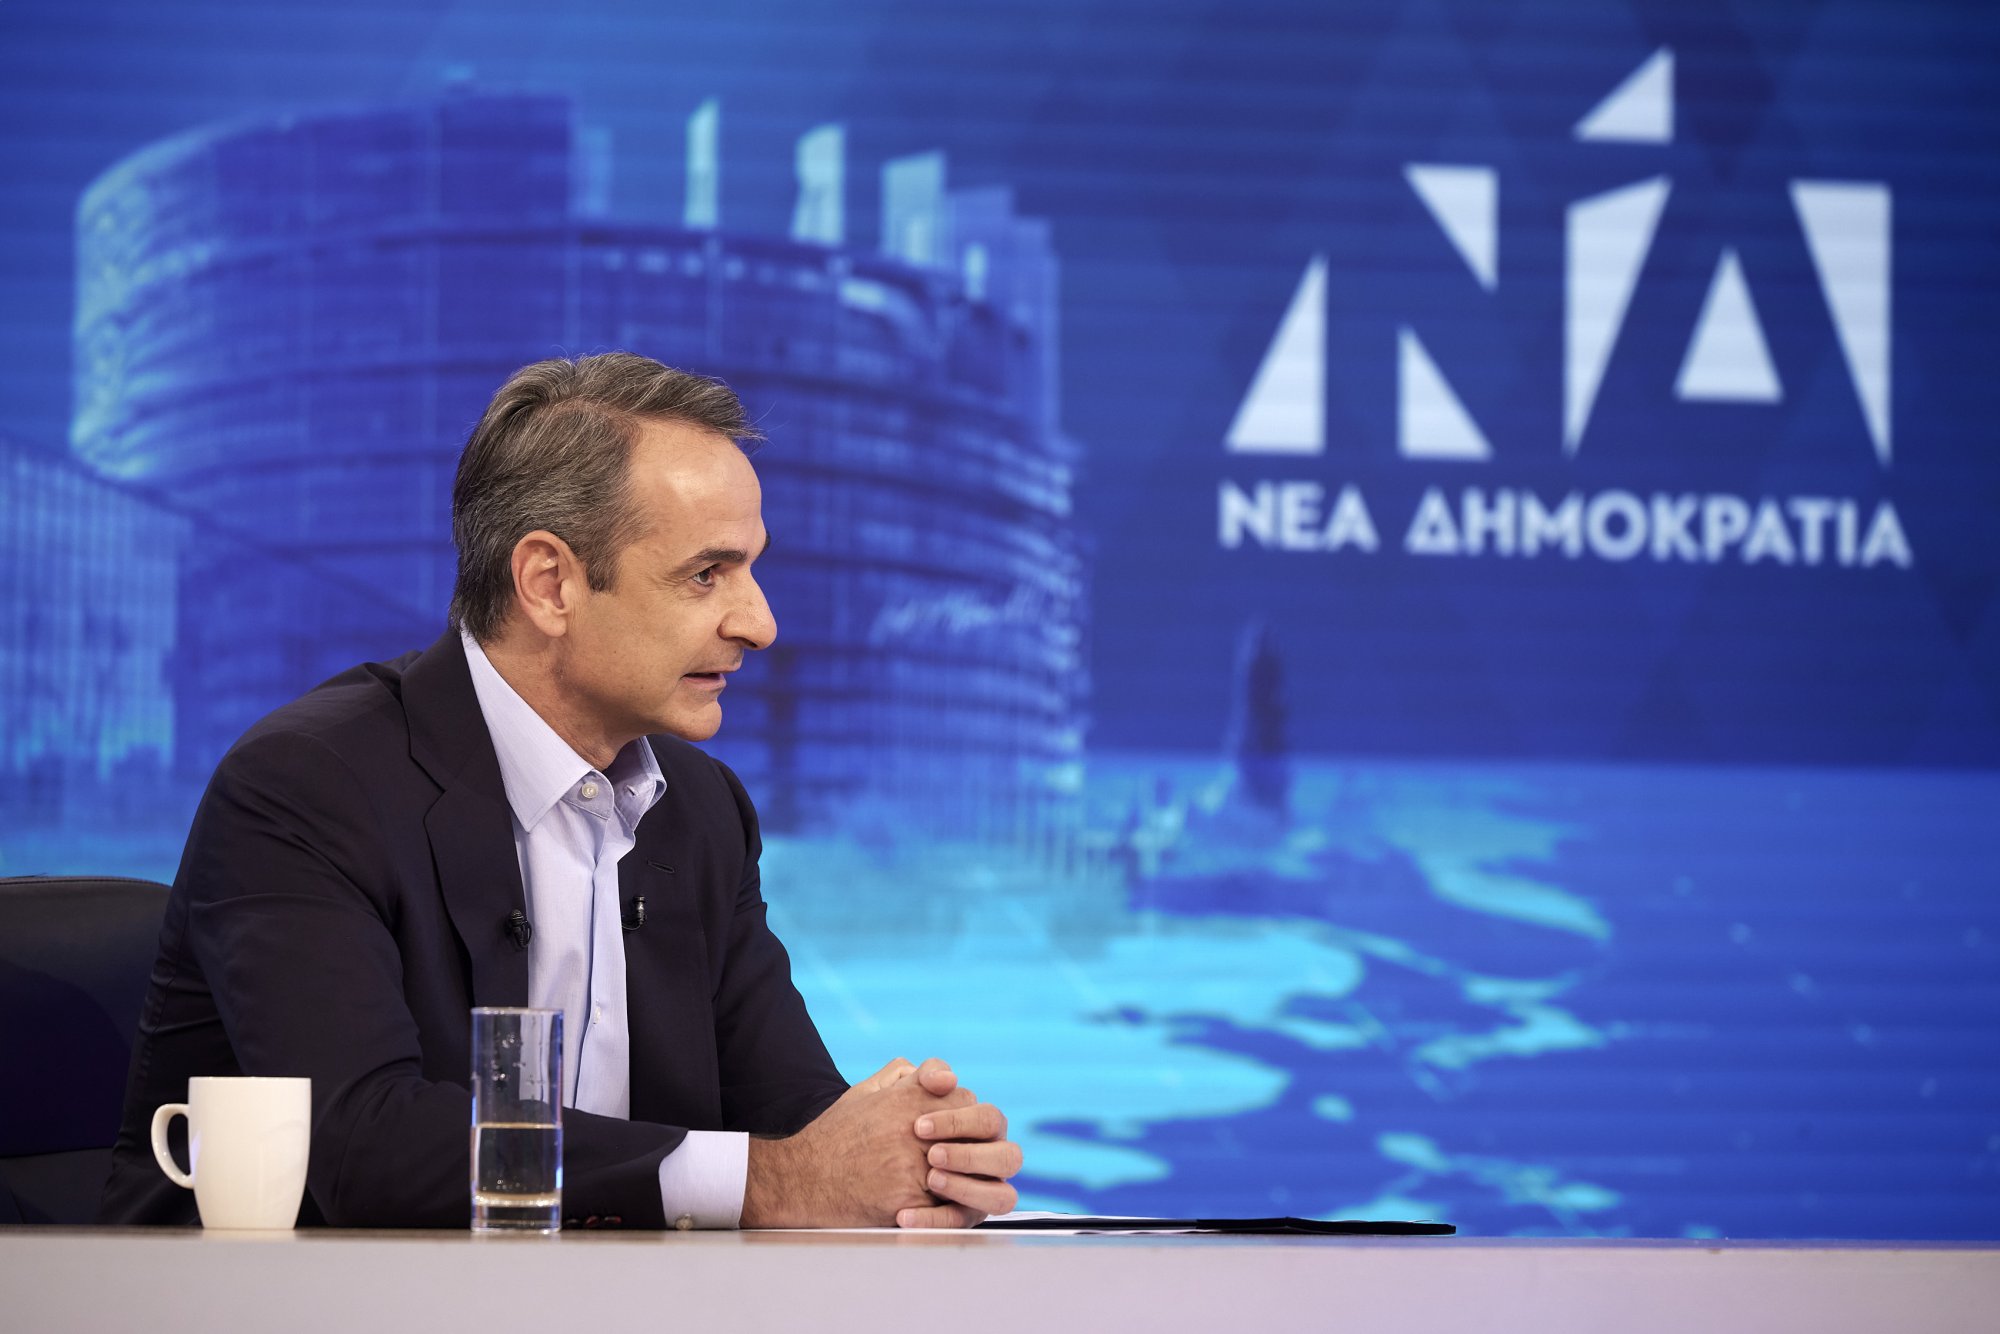 Οι ευρωεκλογές είναι κρίσιμες γιατί θα καθορίσουν τη φωνής της Ελλάδας, λέει ο Μητσοτάκης